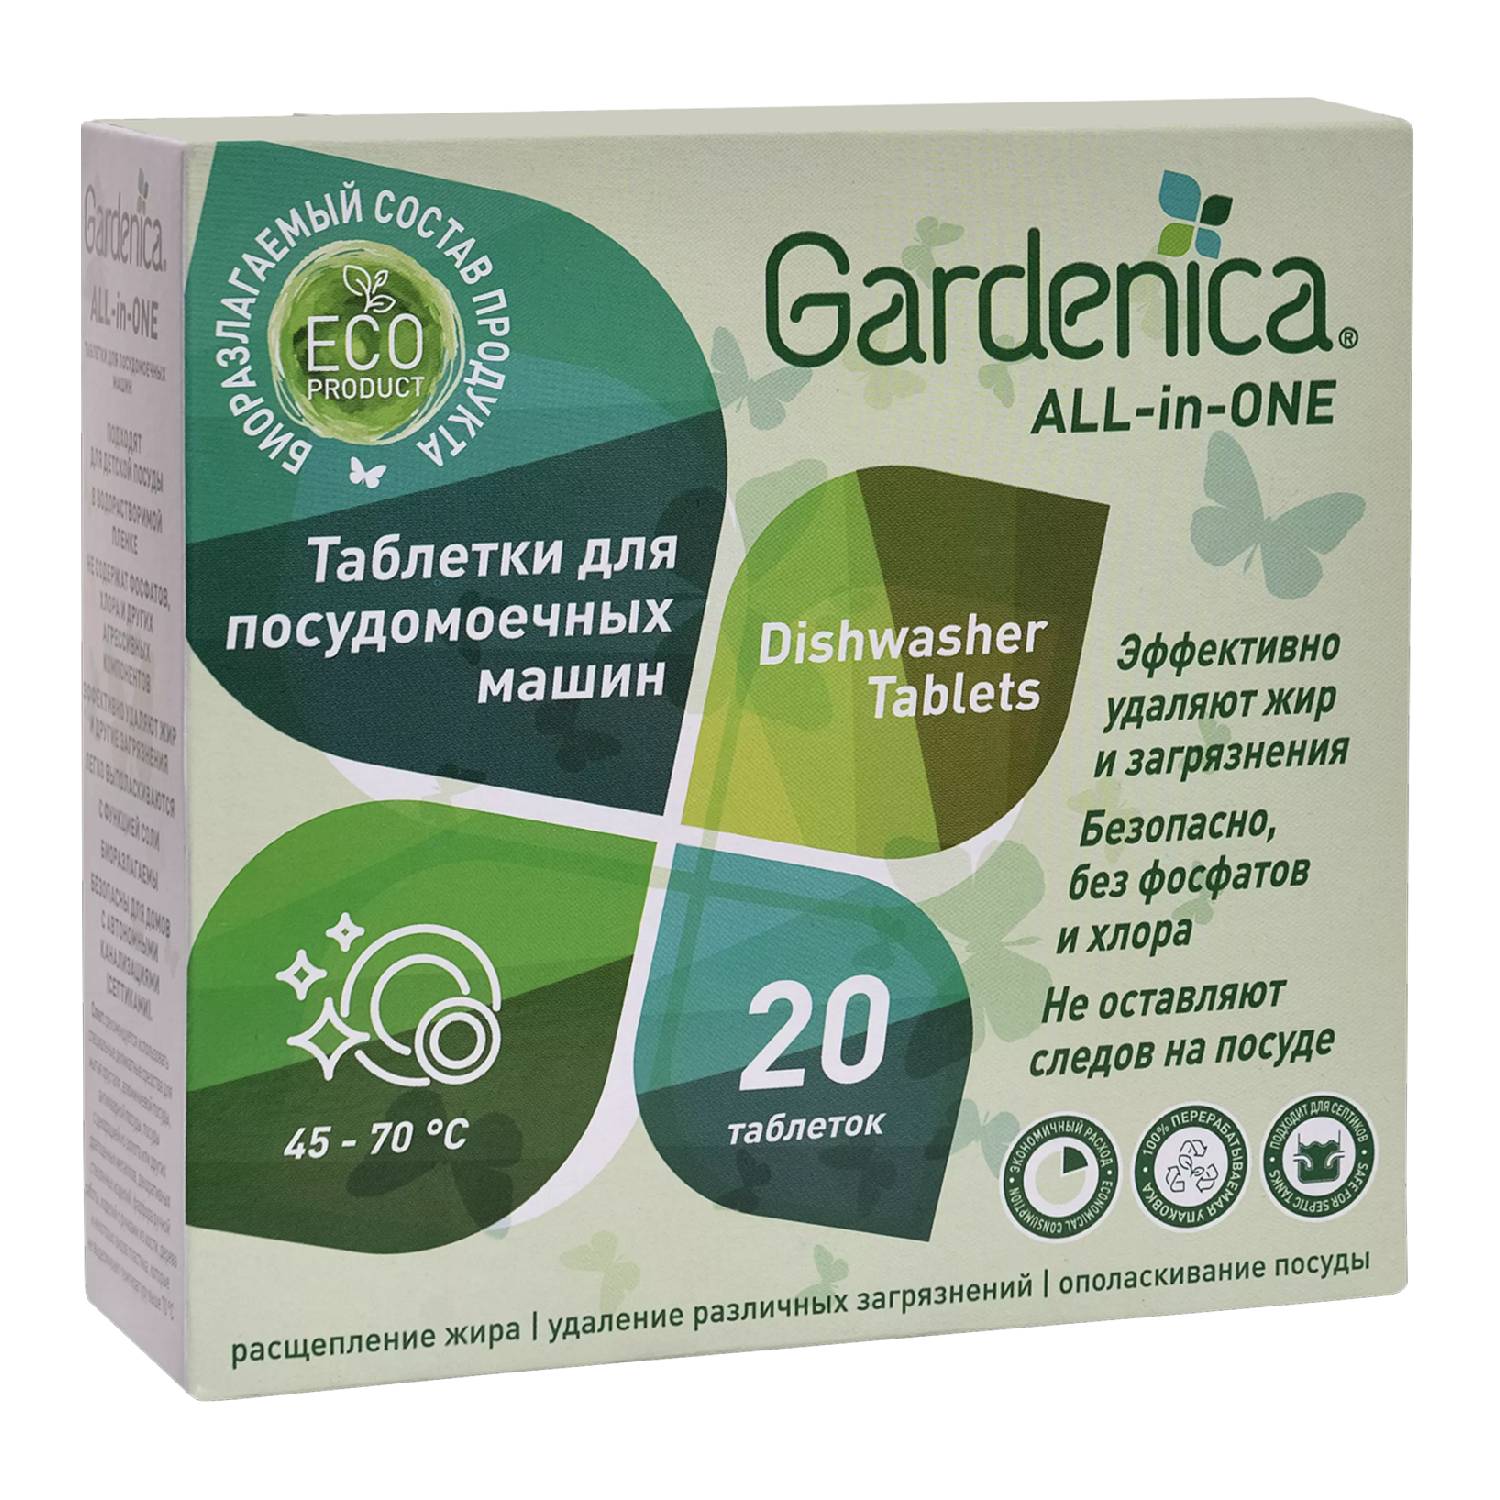 Gardenica Таблетки для посудомоечных машин, 20 шт (Gardenica, Посуда)